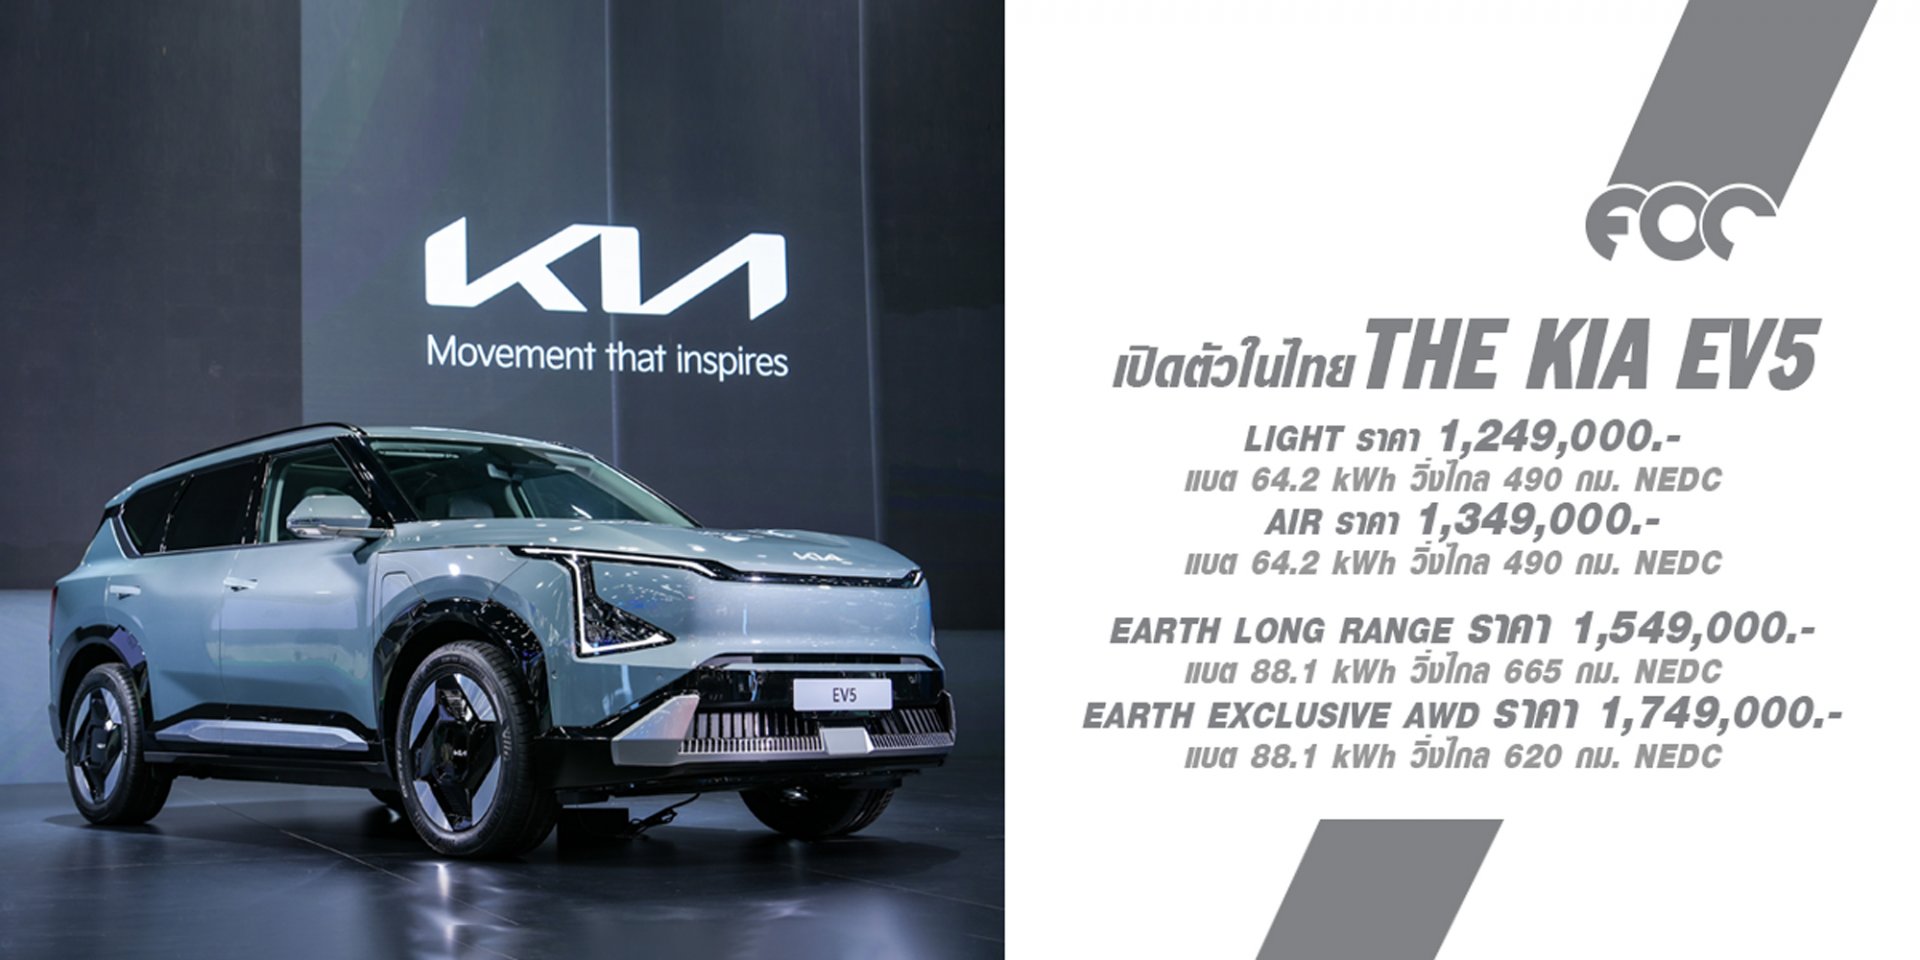 เกีย เซลส์ (ประเทศไทย) เปิดตัว The Kia EV5 รถเอสยูวีขนาดกลาง ไฟฟ้า 100% ครบไลน์อัป ราคาพิเศษช่วงเปิดตัวเริ่มต้น 1.249 ล้านบาท ในงานมอเตอร์โชว์ ครั้งที่ 45